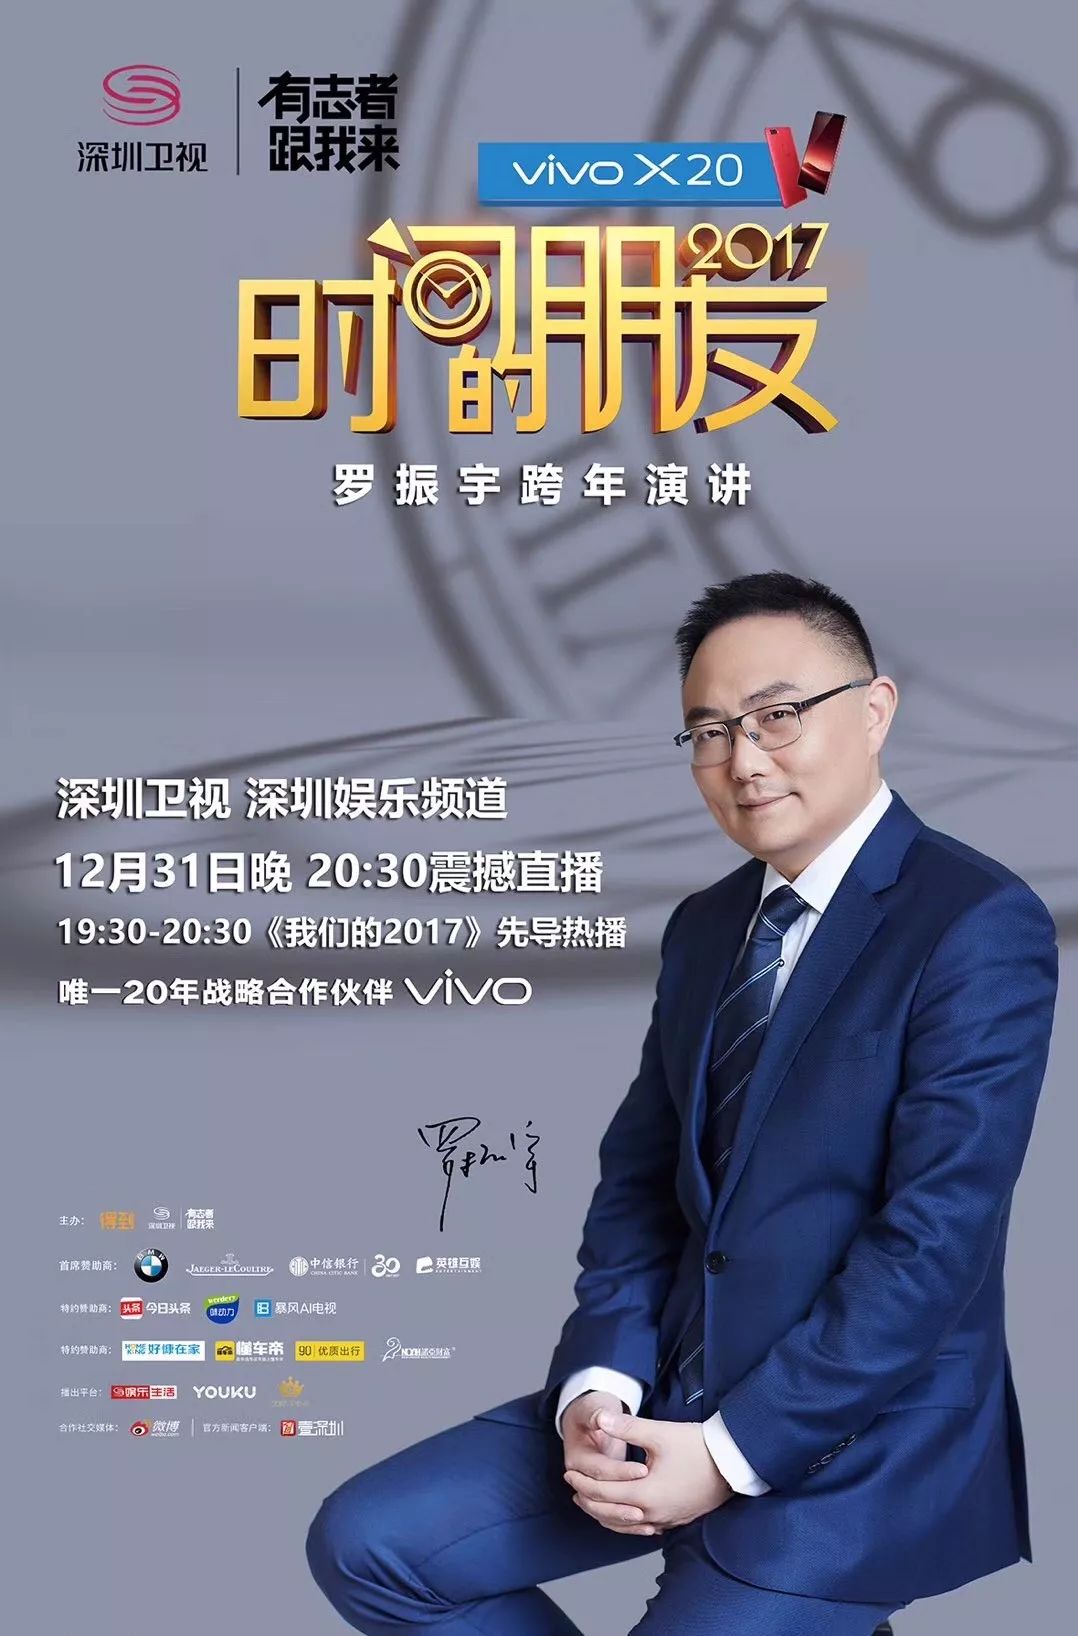 深圳卫视广告2013图片